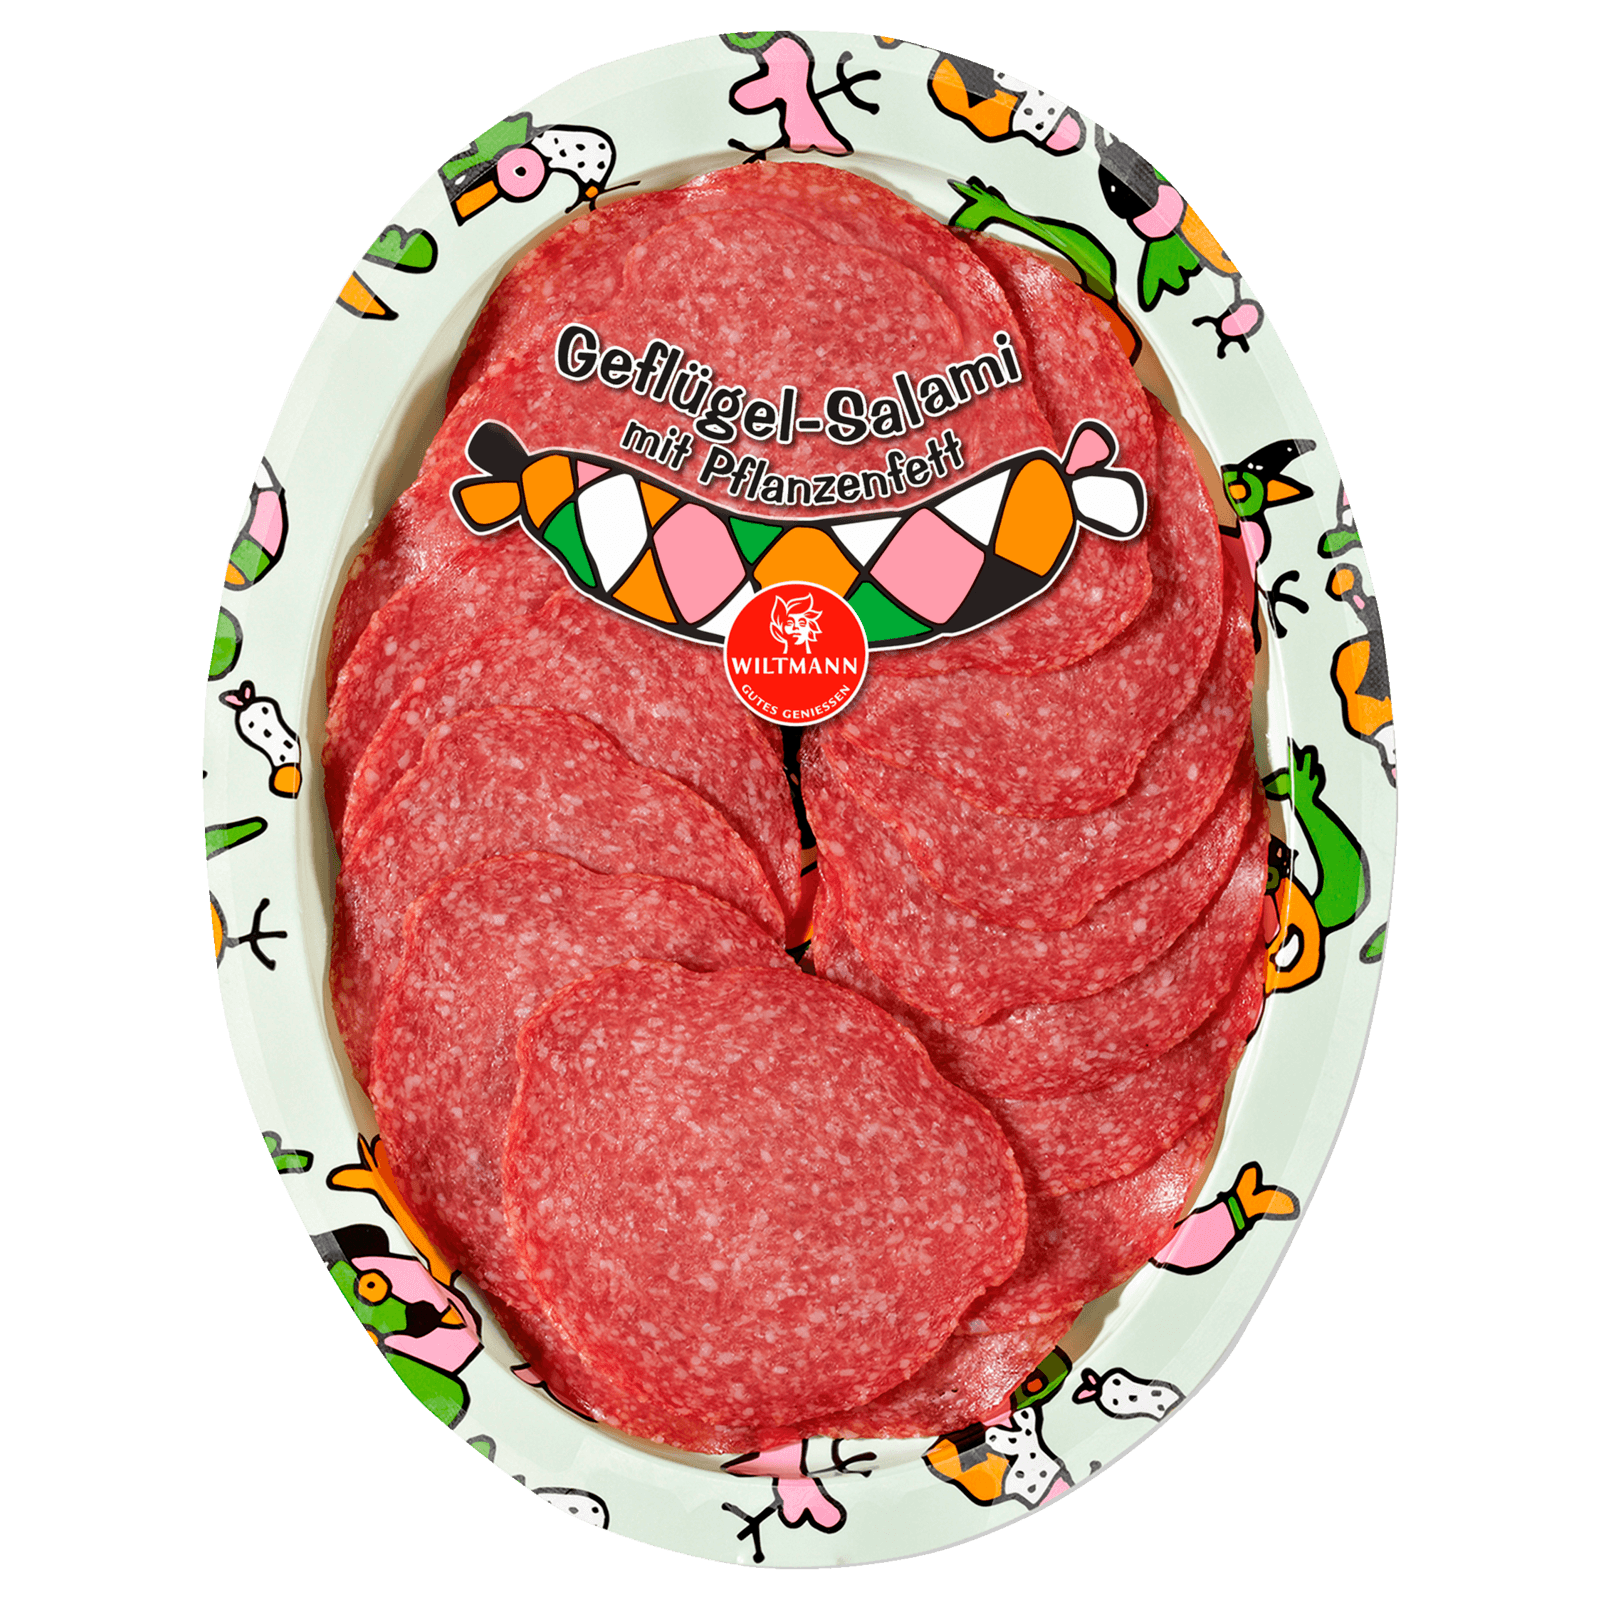 Salami & Paprikawurst kaufen online